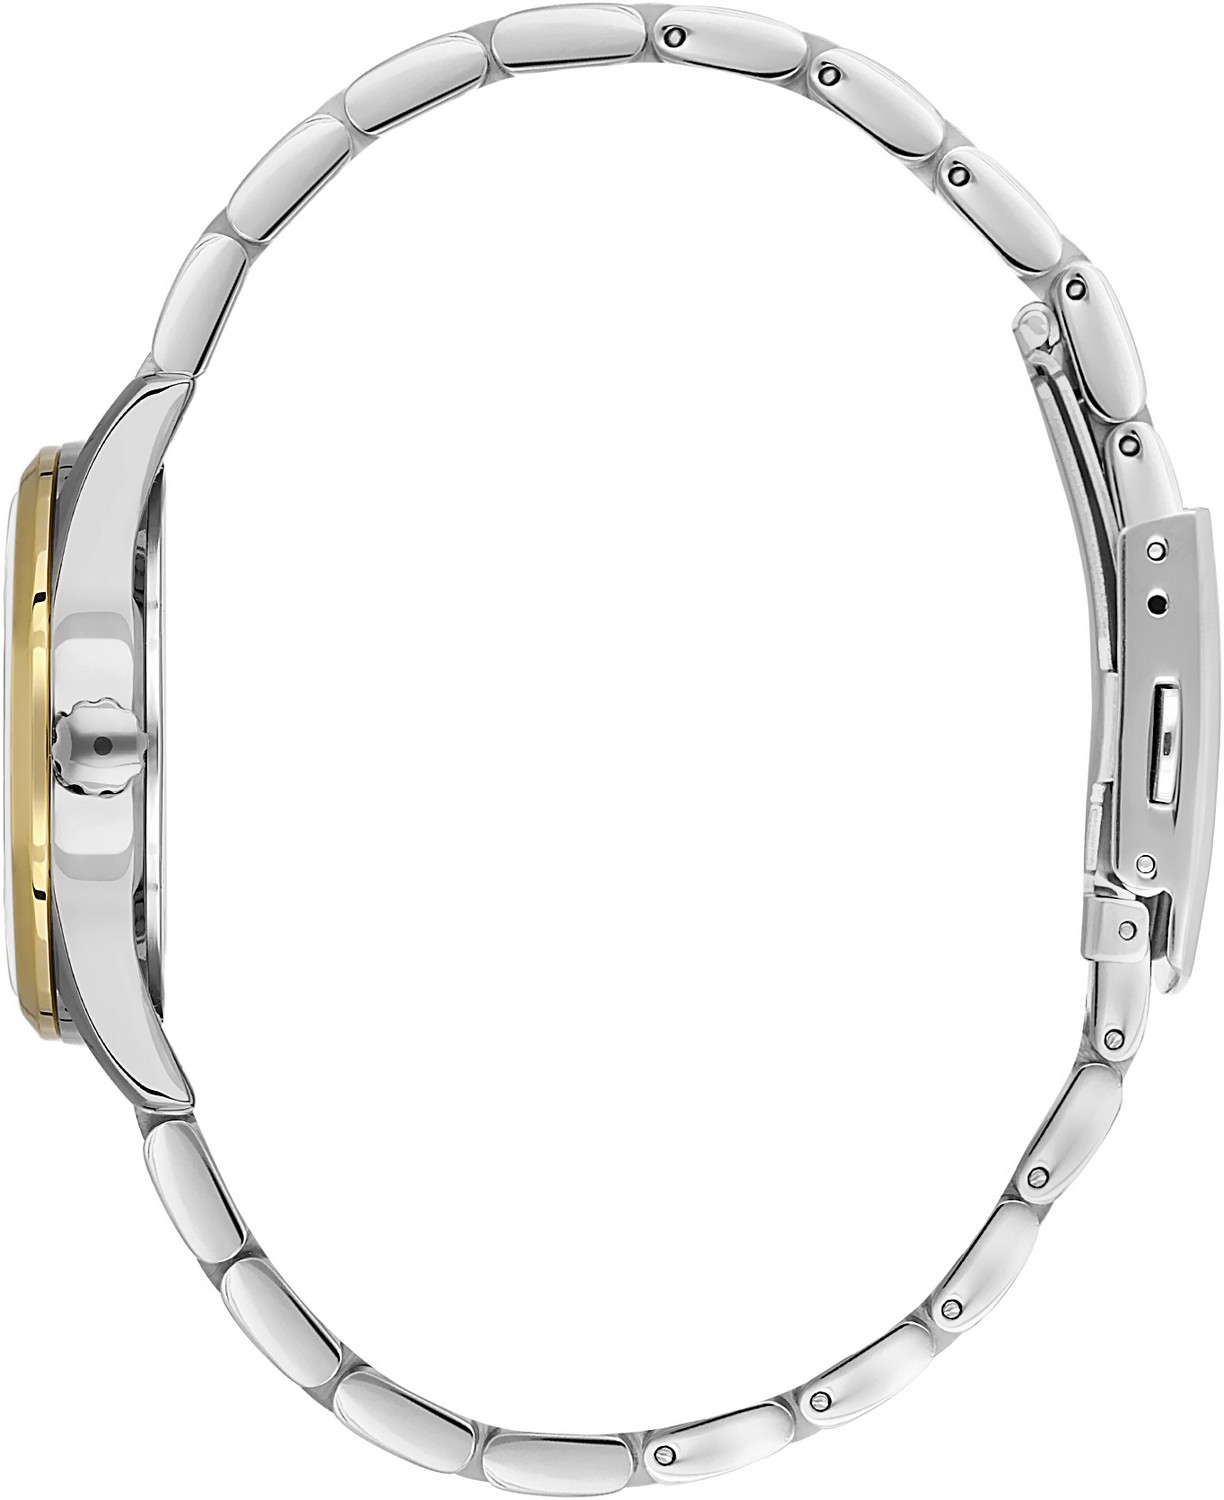 BEVERLY HILLS POLO CLUB  Женские часы, кварцевый механизм, сталь с покрытием, 32 мм